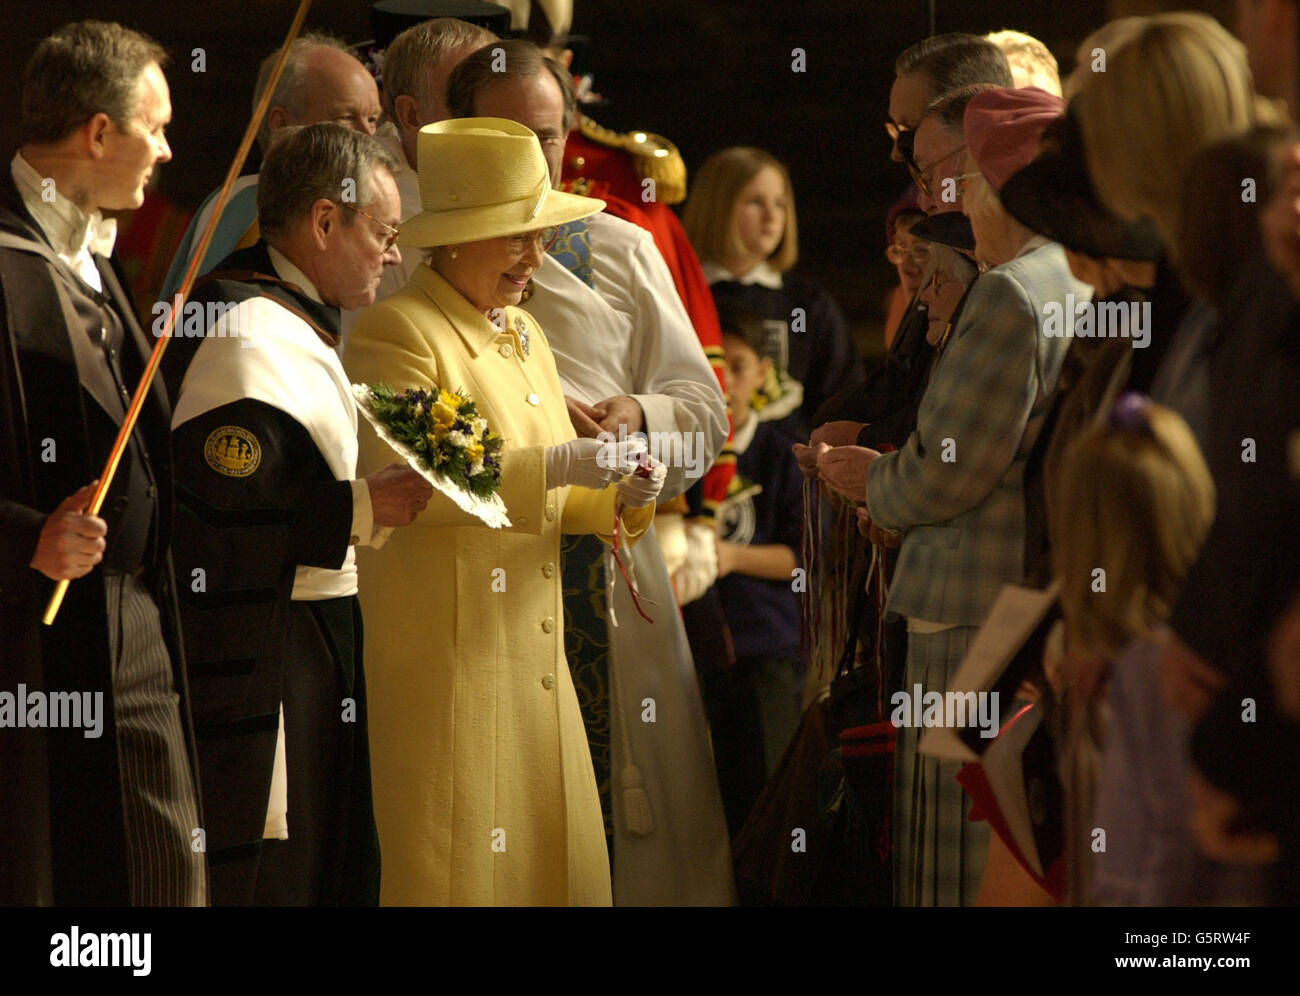 Die britische Königin Elizabeth II. Überreicht 76 Frauen und 76 Männern - entsprechend ihrem Alter im nächsten Monat - während eines Royal Maunday-Dienstes zwei Tüten Grüngeld in der Kathedrale von Canterbury. * in jedem kleinen roten Beutel war eine neue 5-Münze und ein 50p-Stück, das das Jubiläum markiert, während in einem weißen Beutel war 76p im Wert von besonderen Grüngeld. Stockfoto